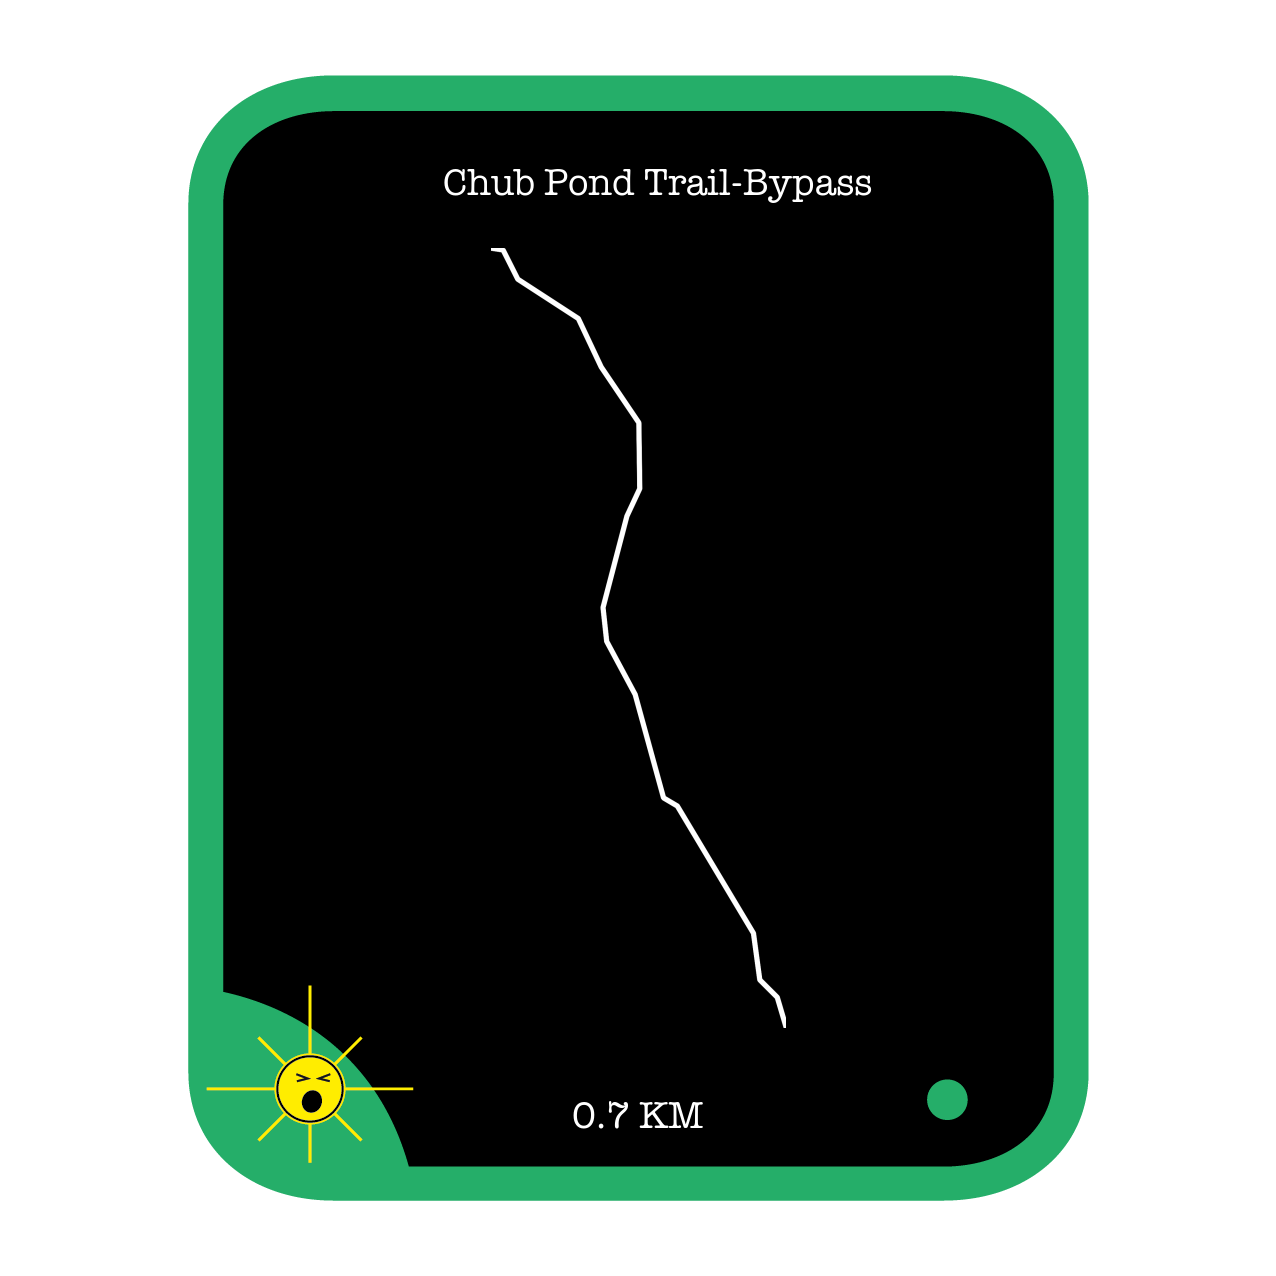 Chub Pond Trail-Bypass